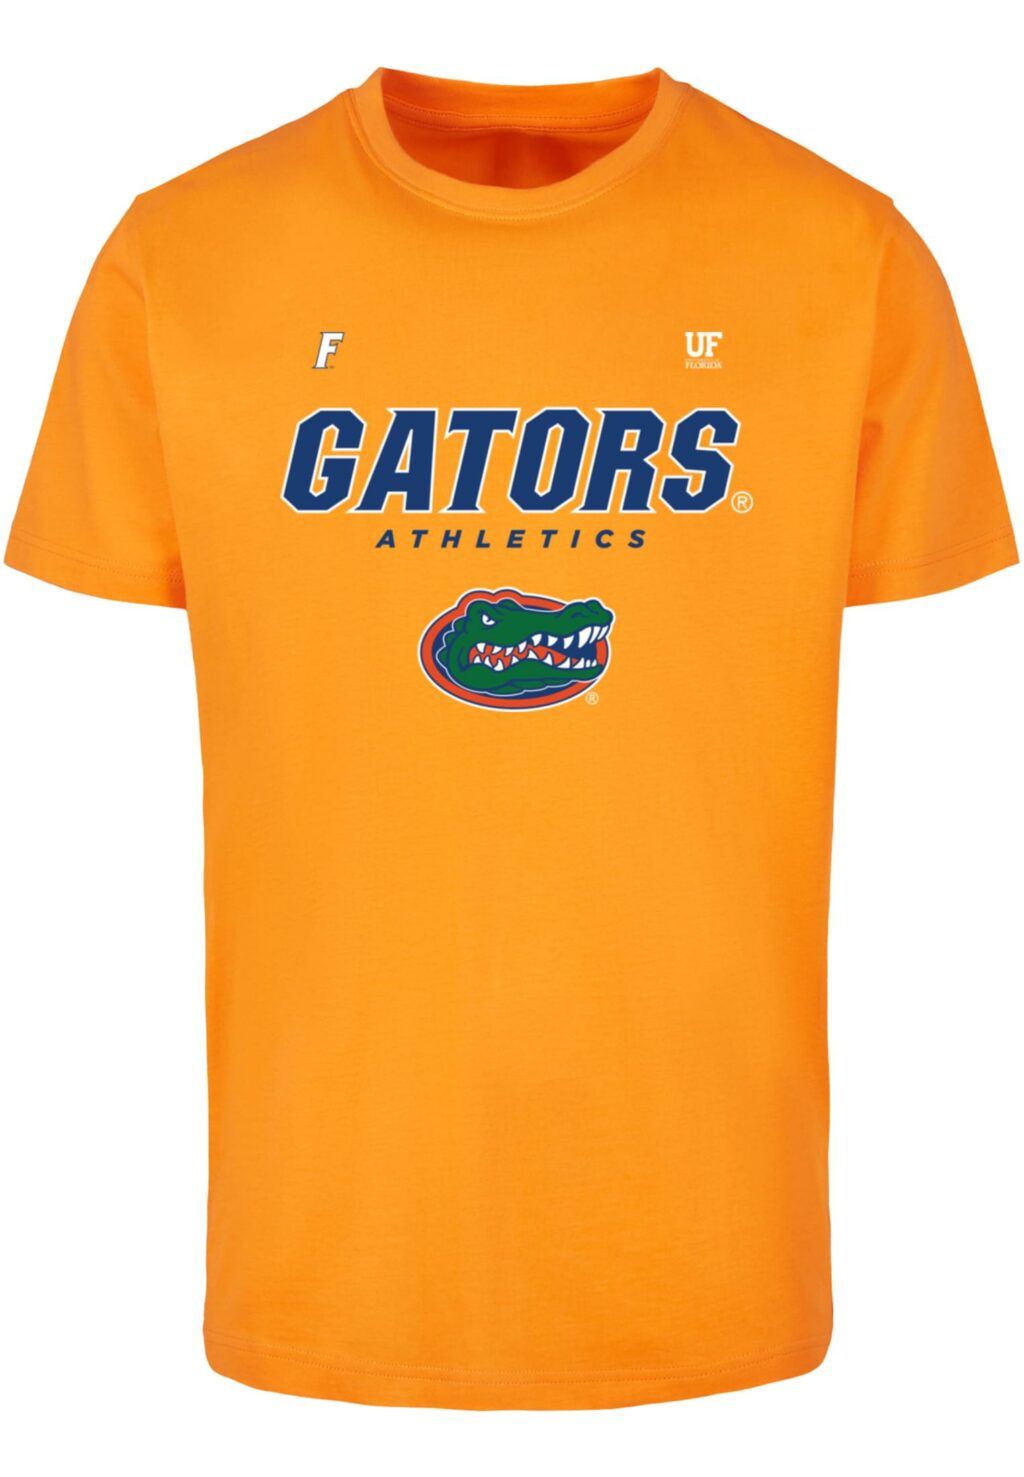 Florida Gators Athletics Tee paradise orange MC901